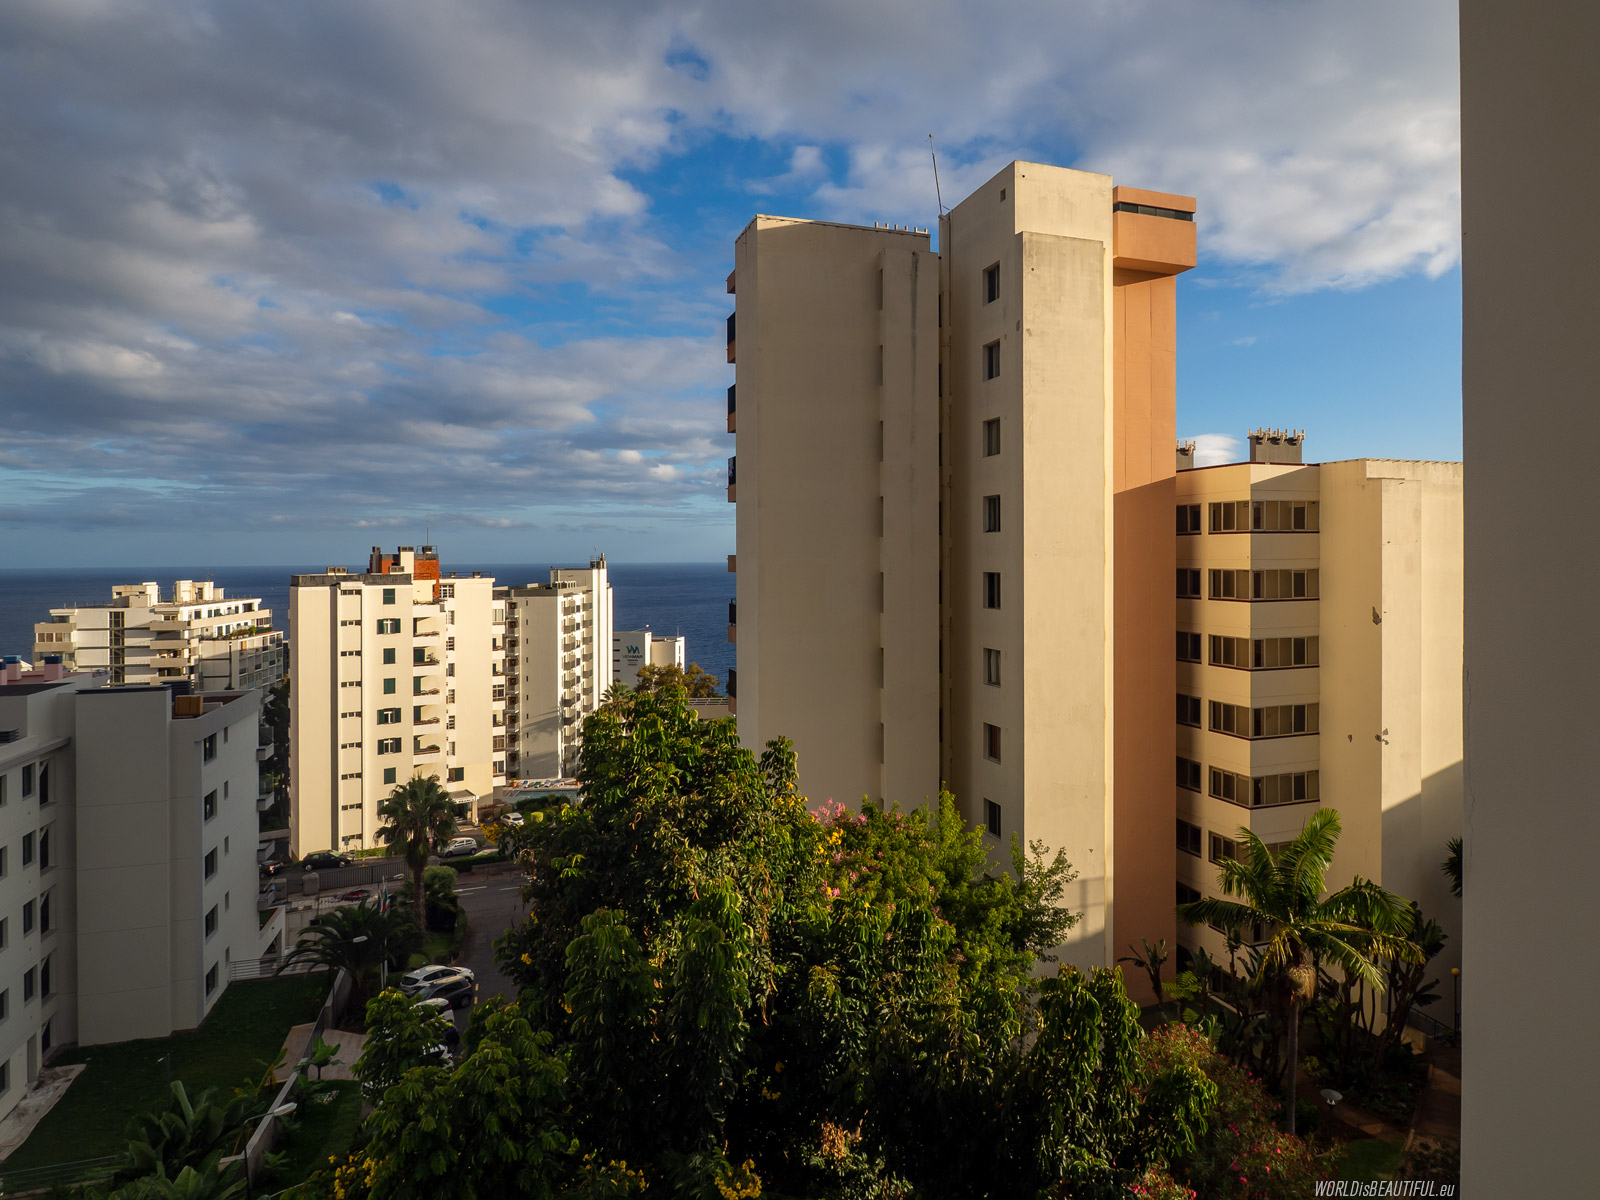 Window view - Hotel Dorisol Estrelicia